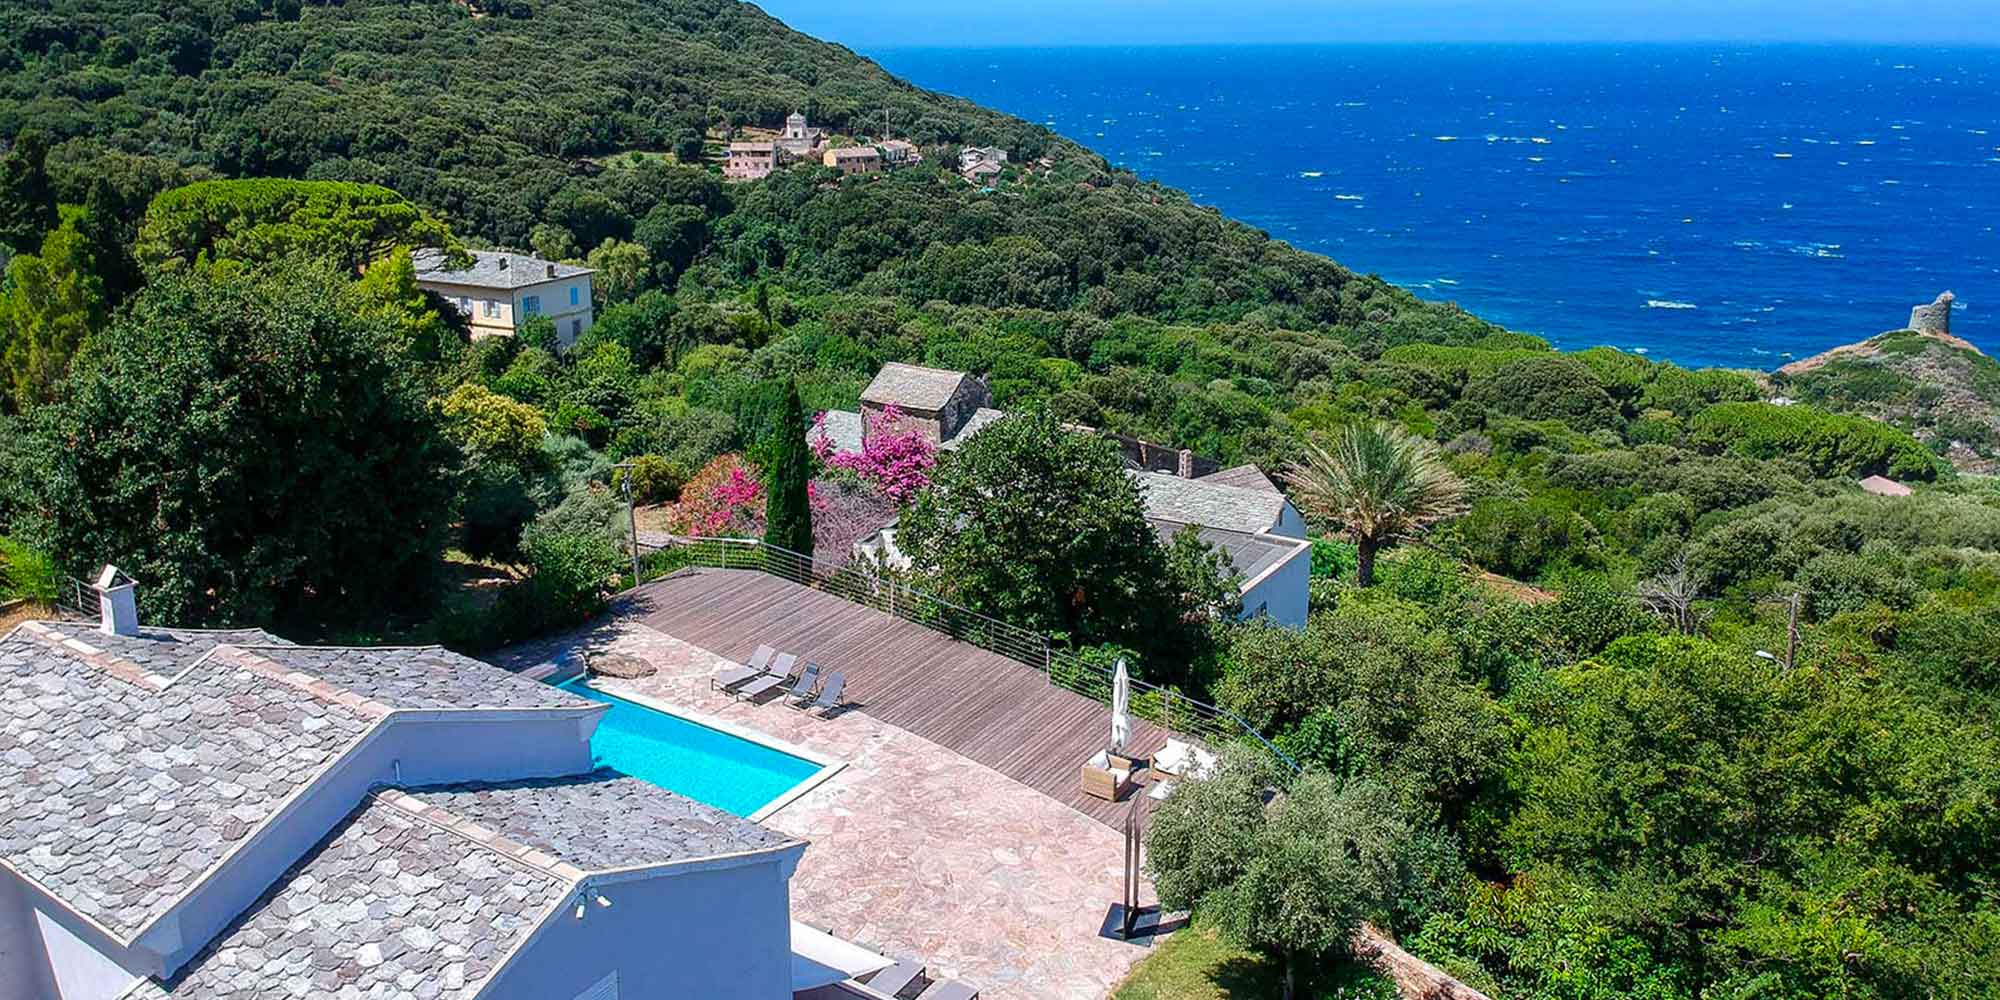 Location de vacances villa avec piscine, spa et vue mer à la marine de pino dans le Cap Corse